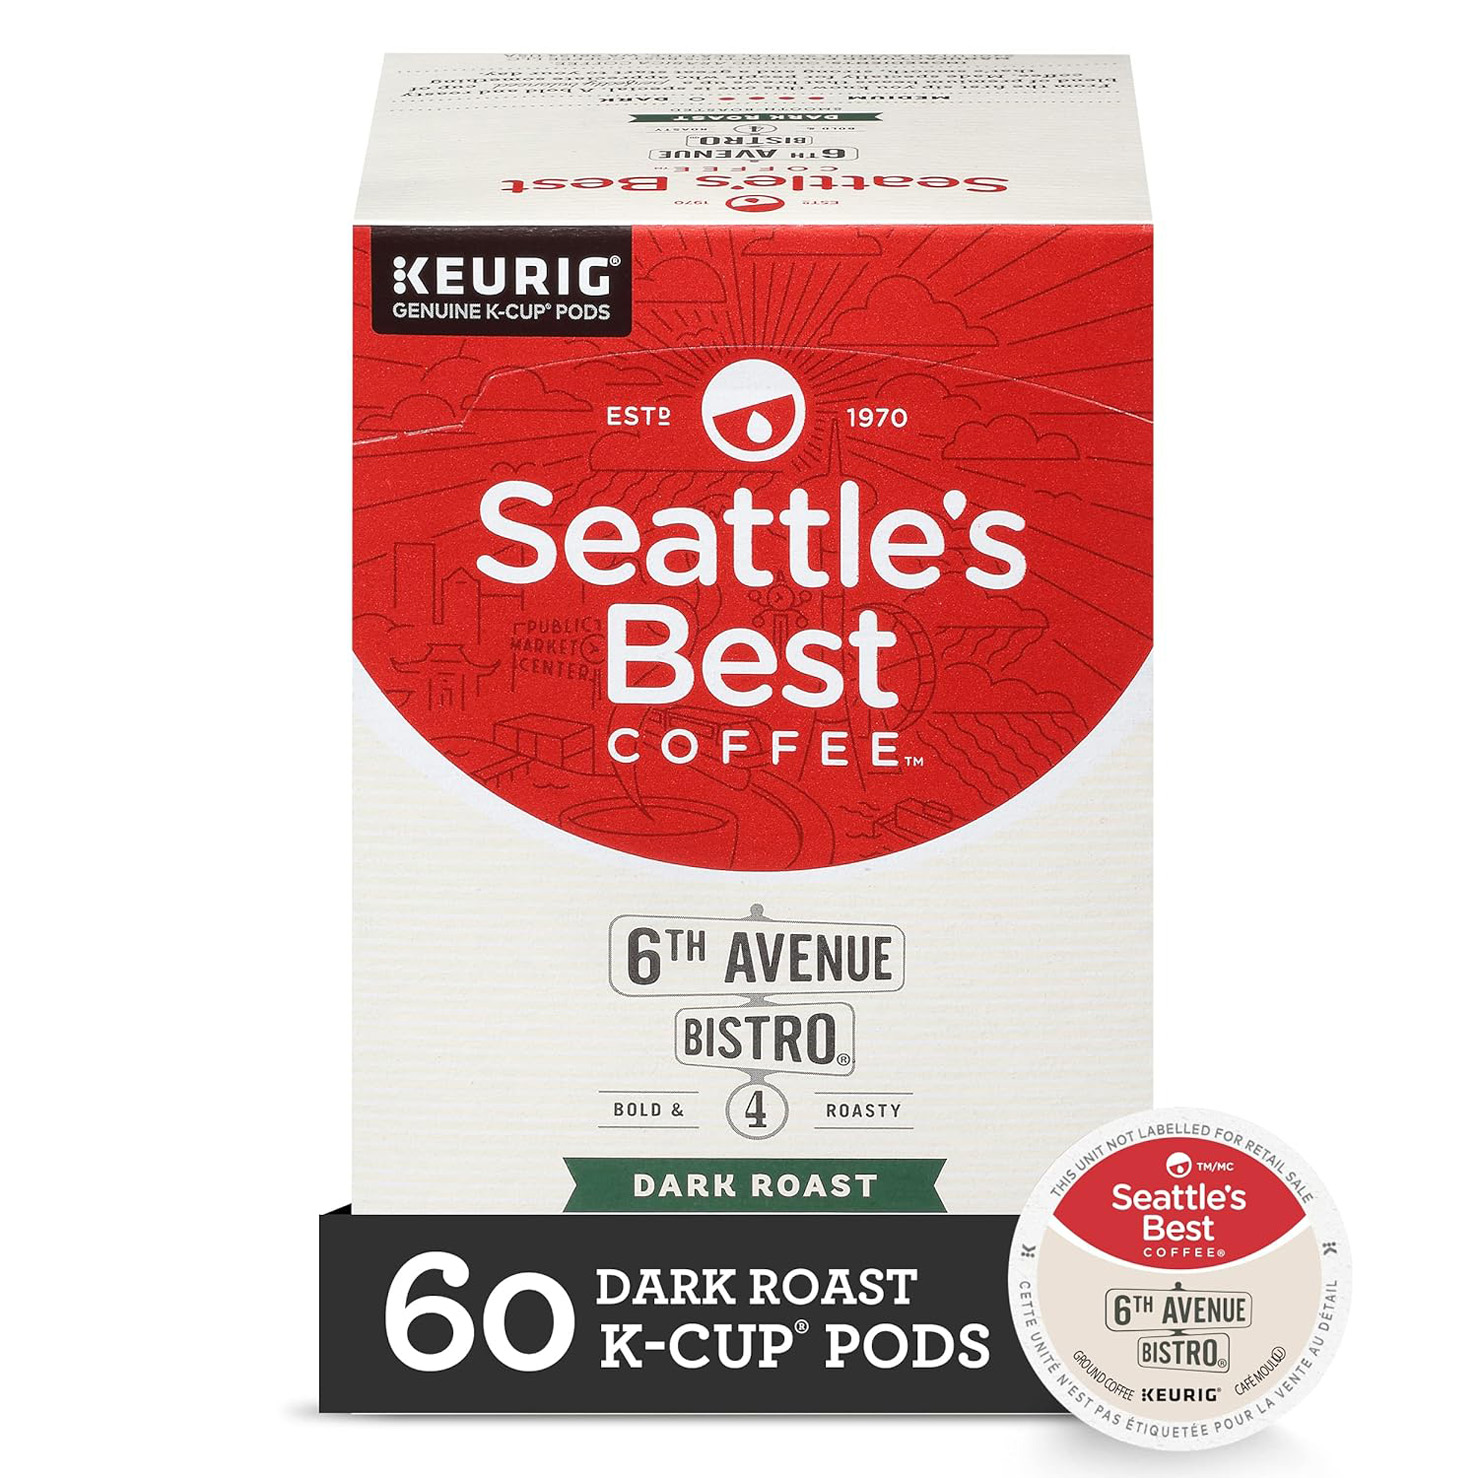 Seattle’s Best Coffee 6th Avenue Bistro Dark Roast K-Cup Pods